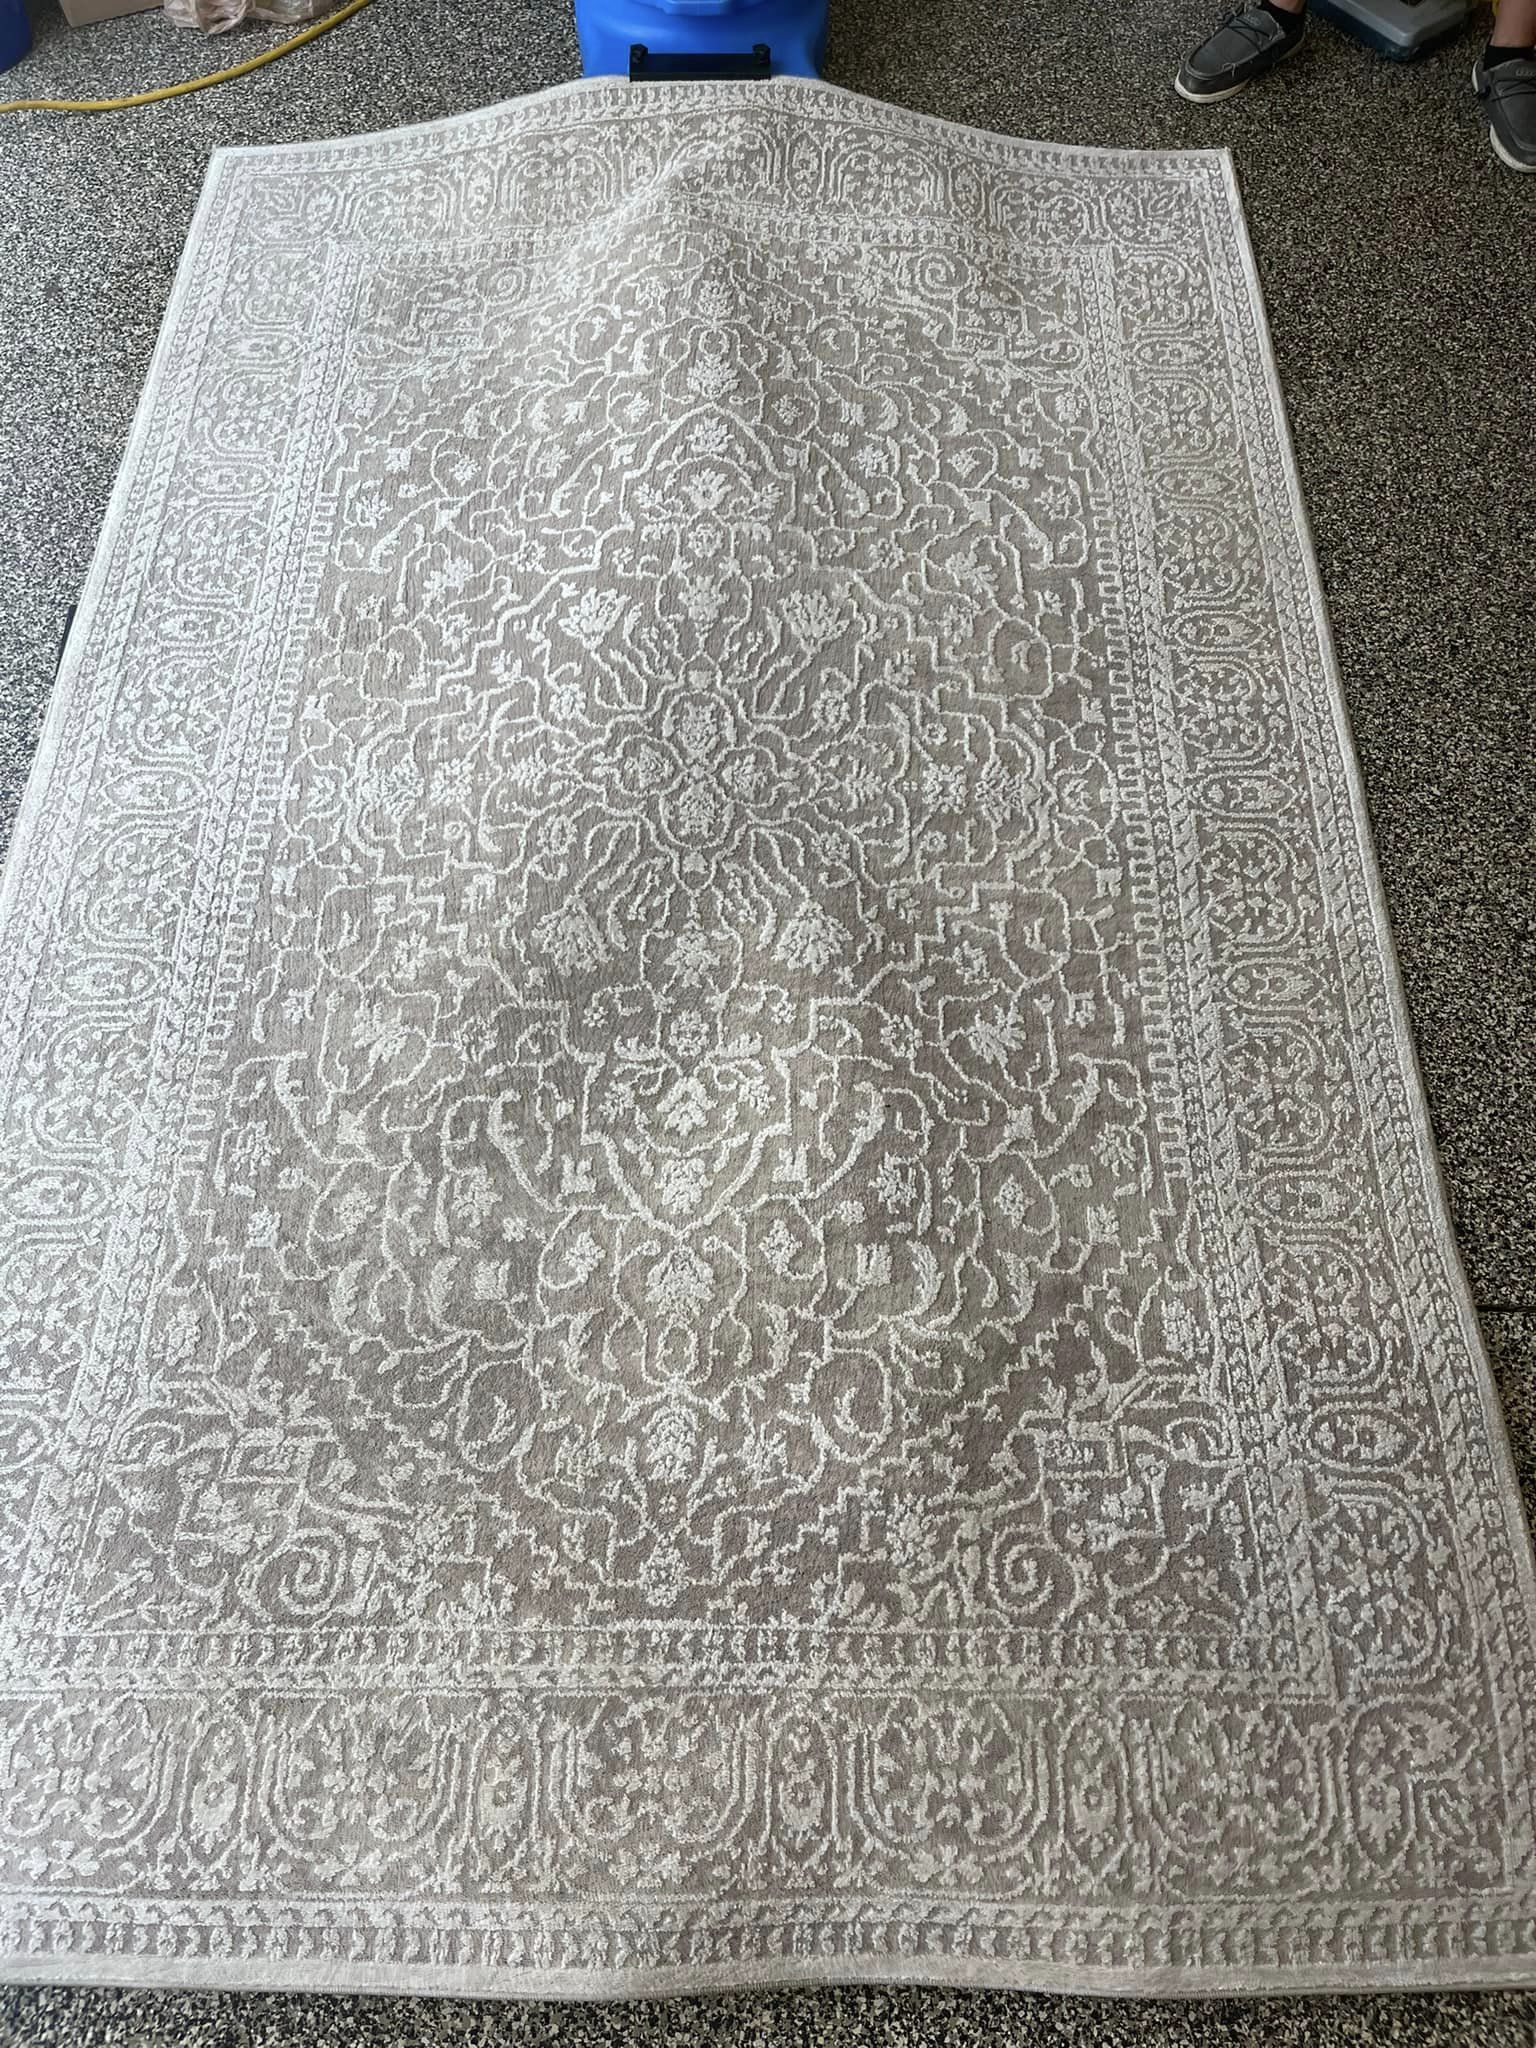 a rug on the floor